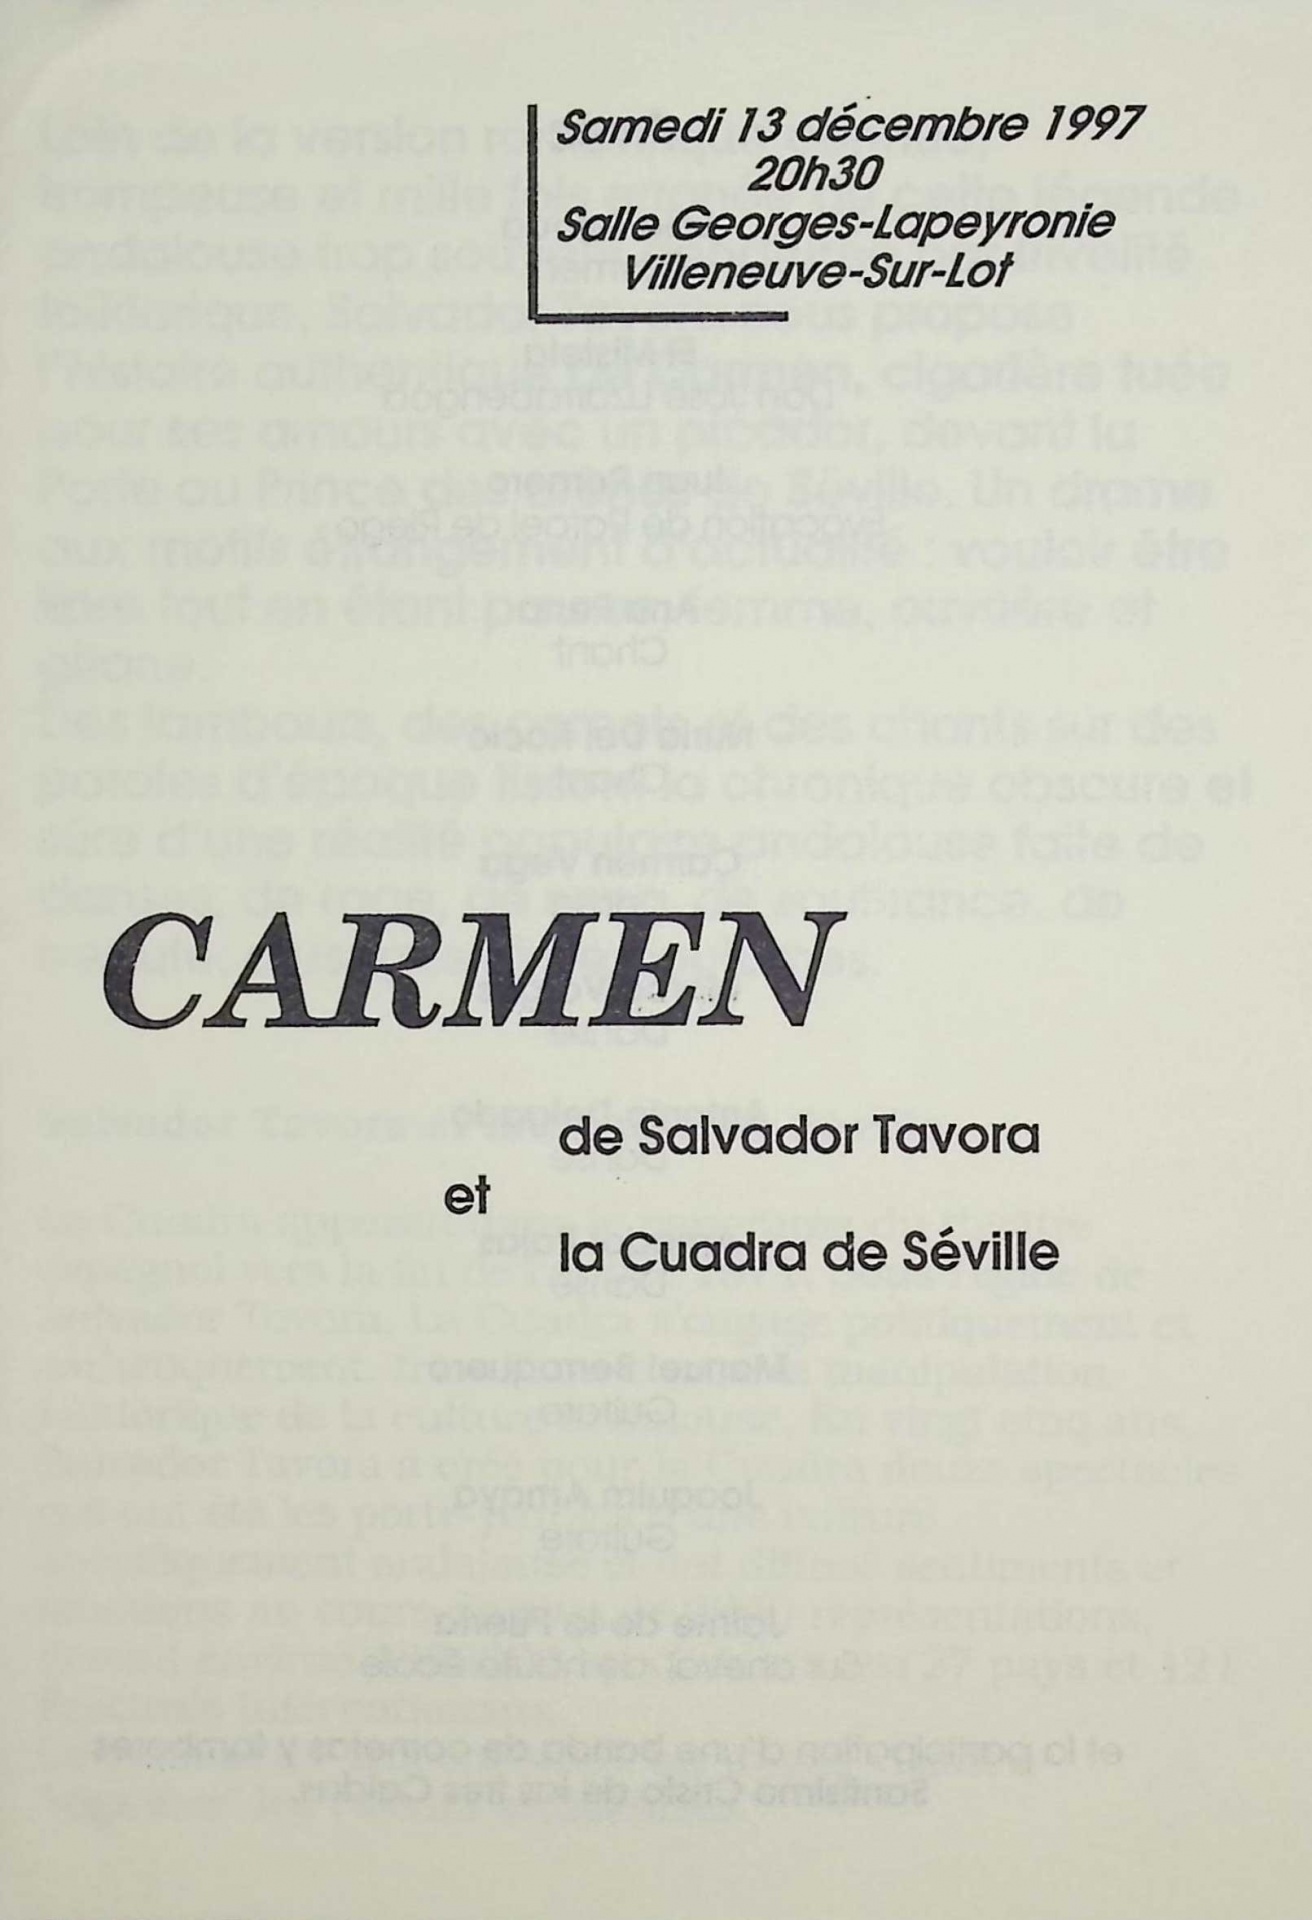 Carmen de Salvador Tavora et la Cuadra de Séville